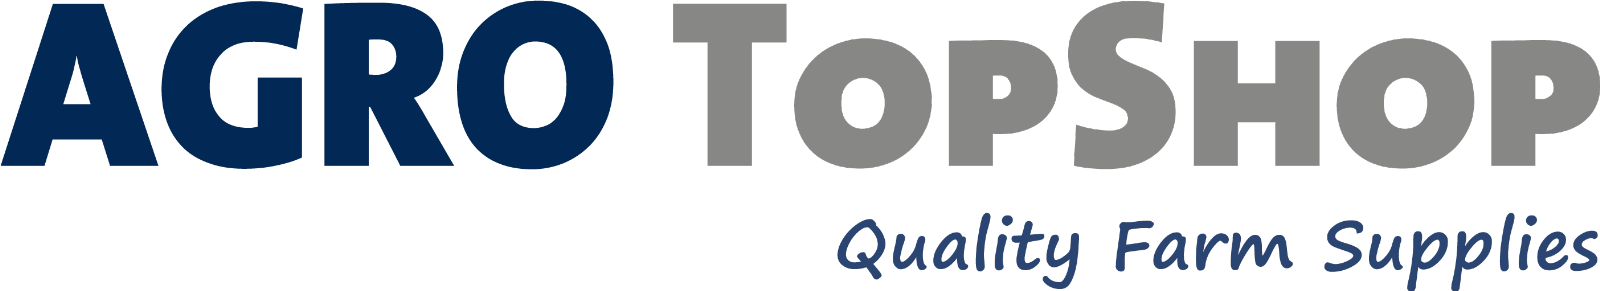 Agro TopShop logo